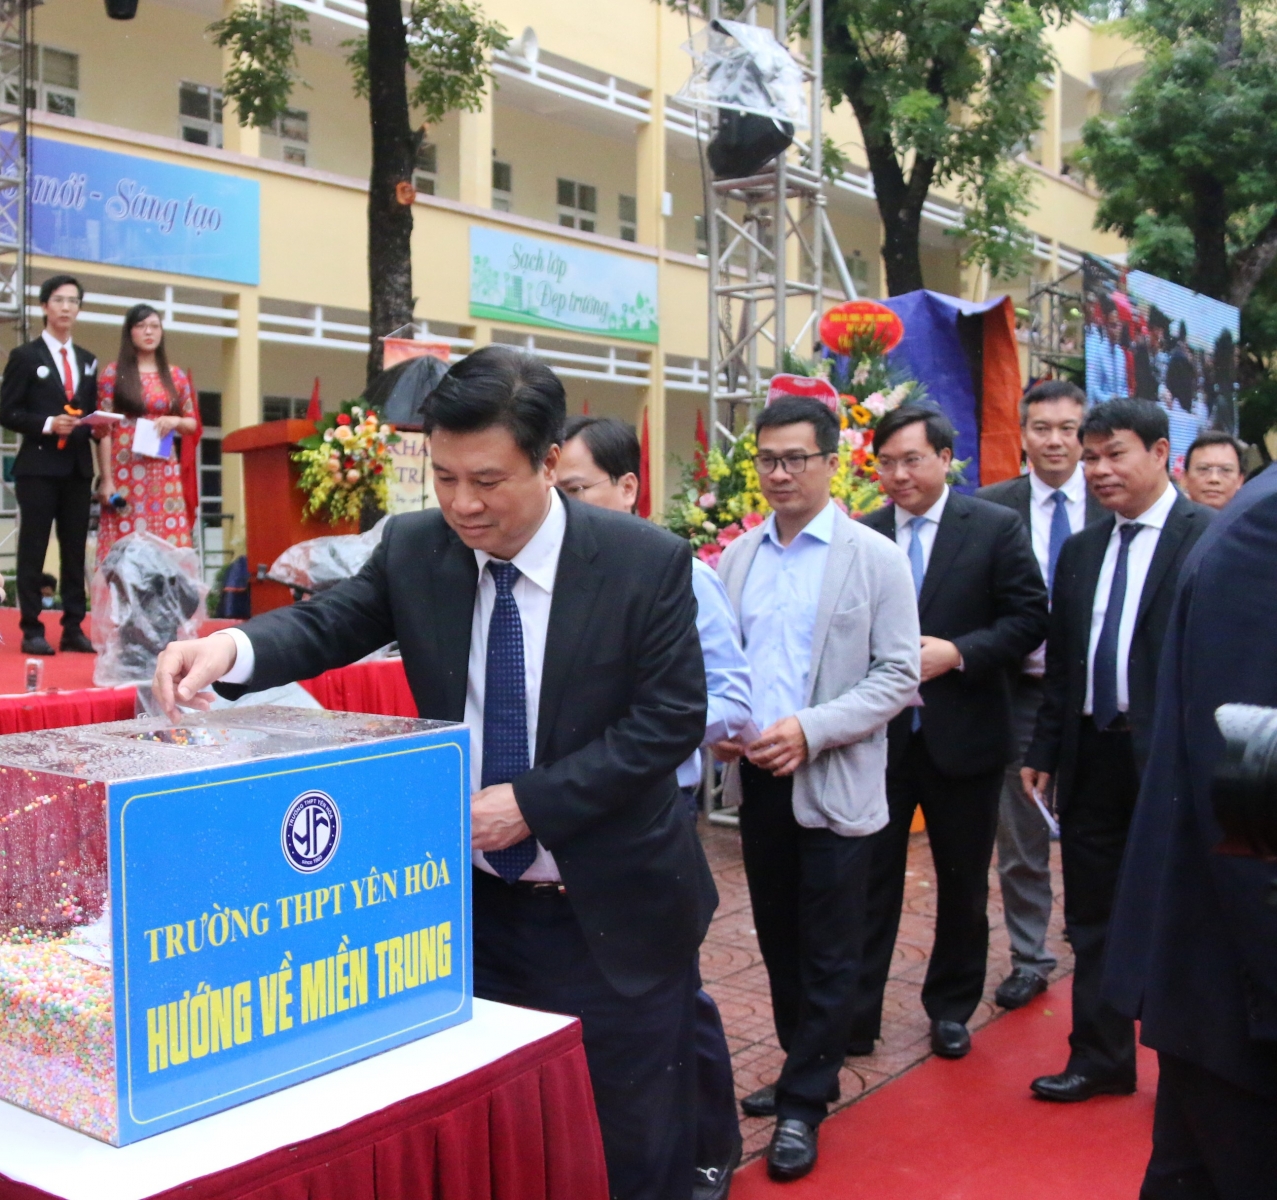 Trường THPT Yên Hòa (Hà Nội) đón nhận Cờ thi đua của Chính phủ - Ảnh minh hoạ 3